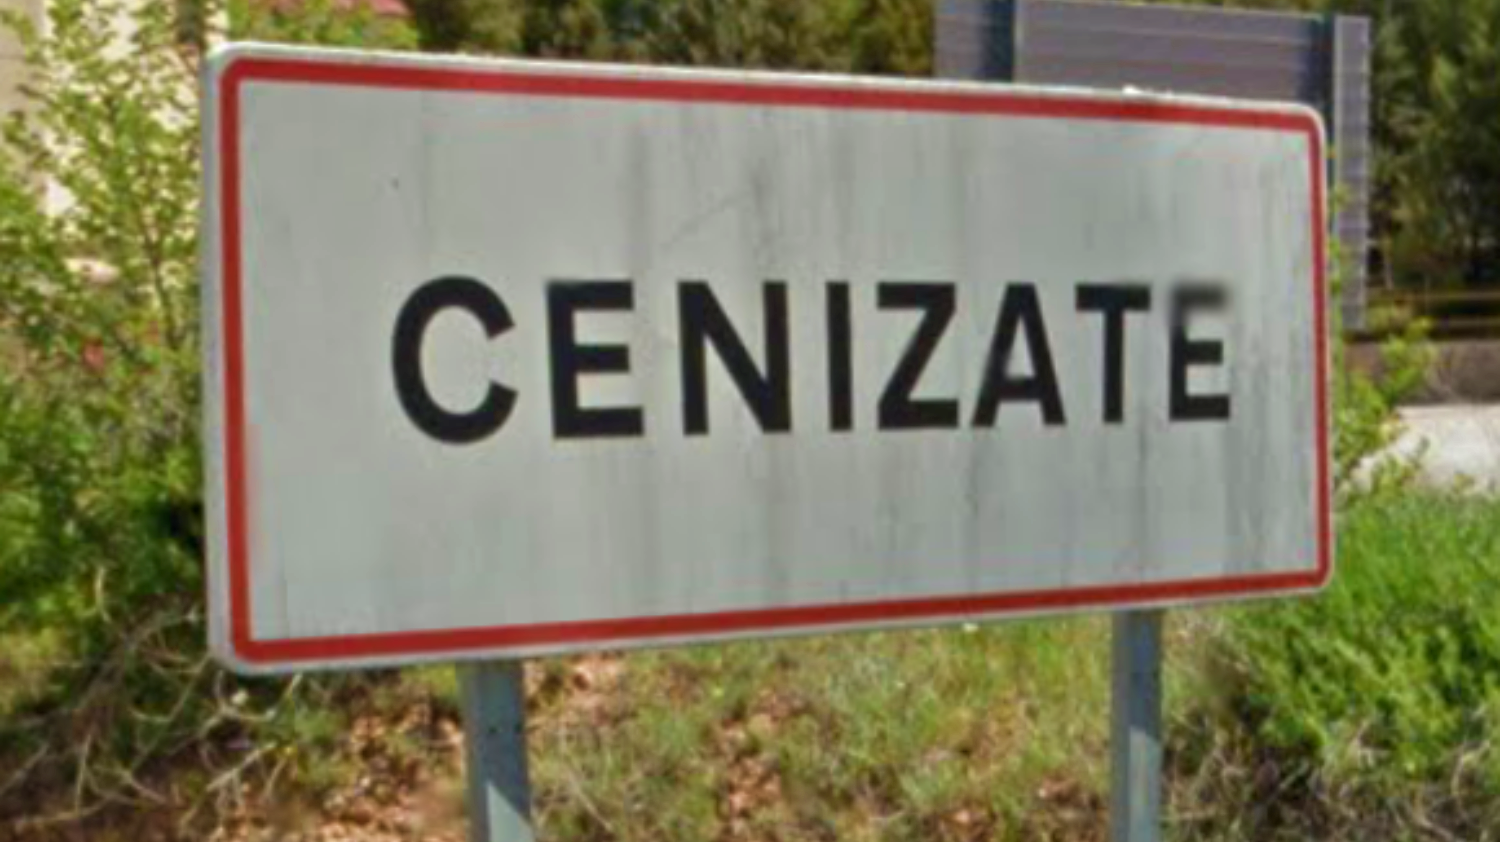 Cenizate (Albacete)